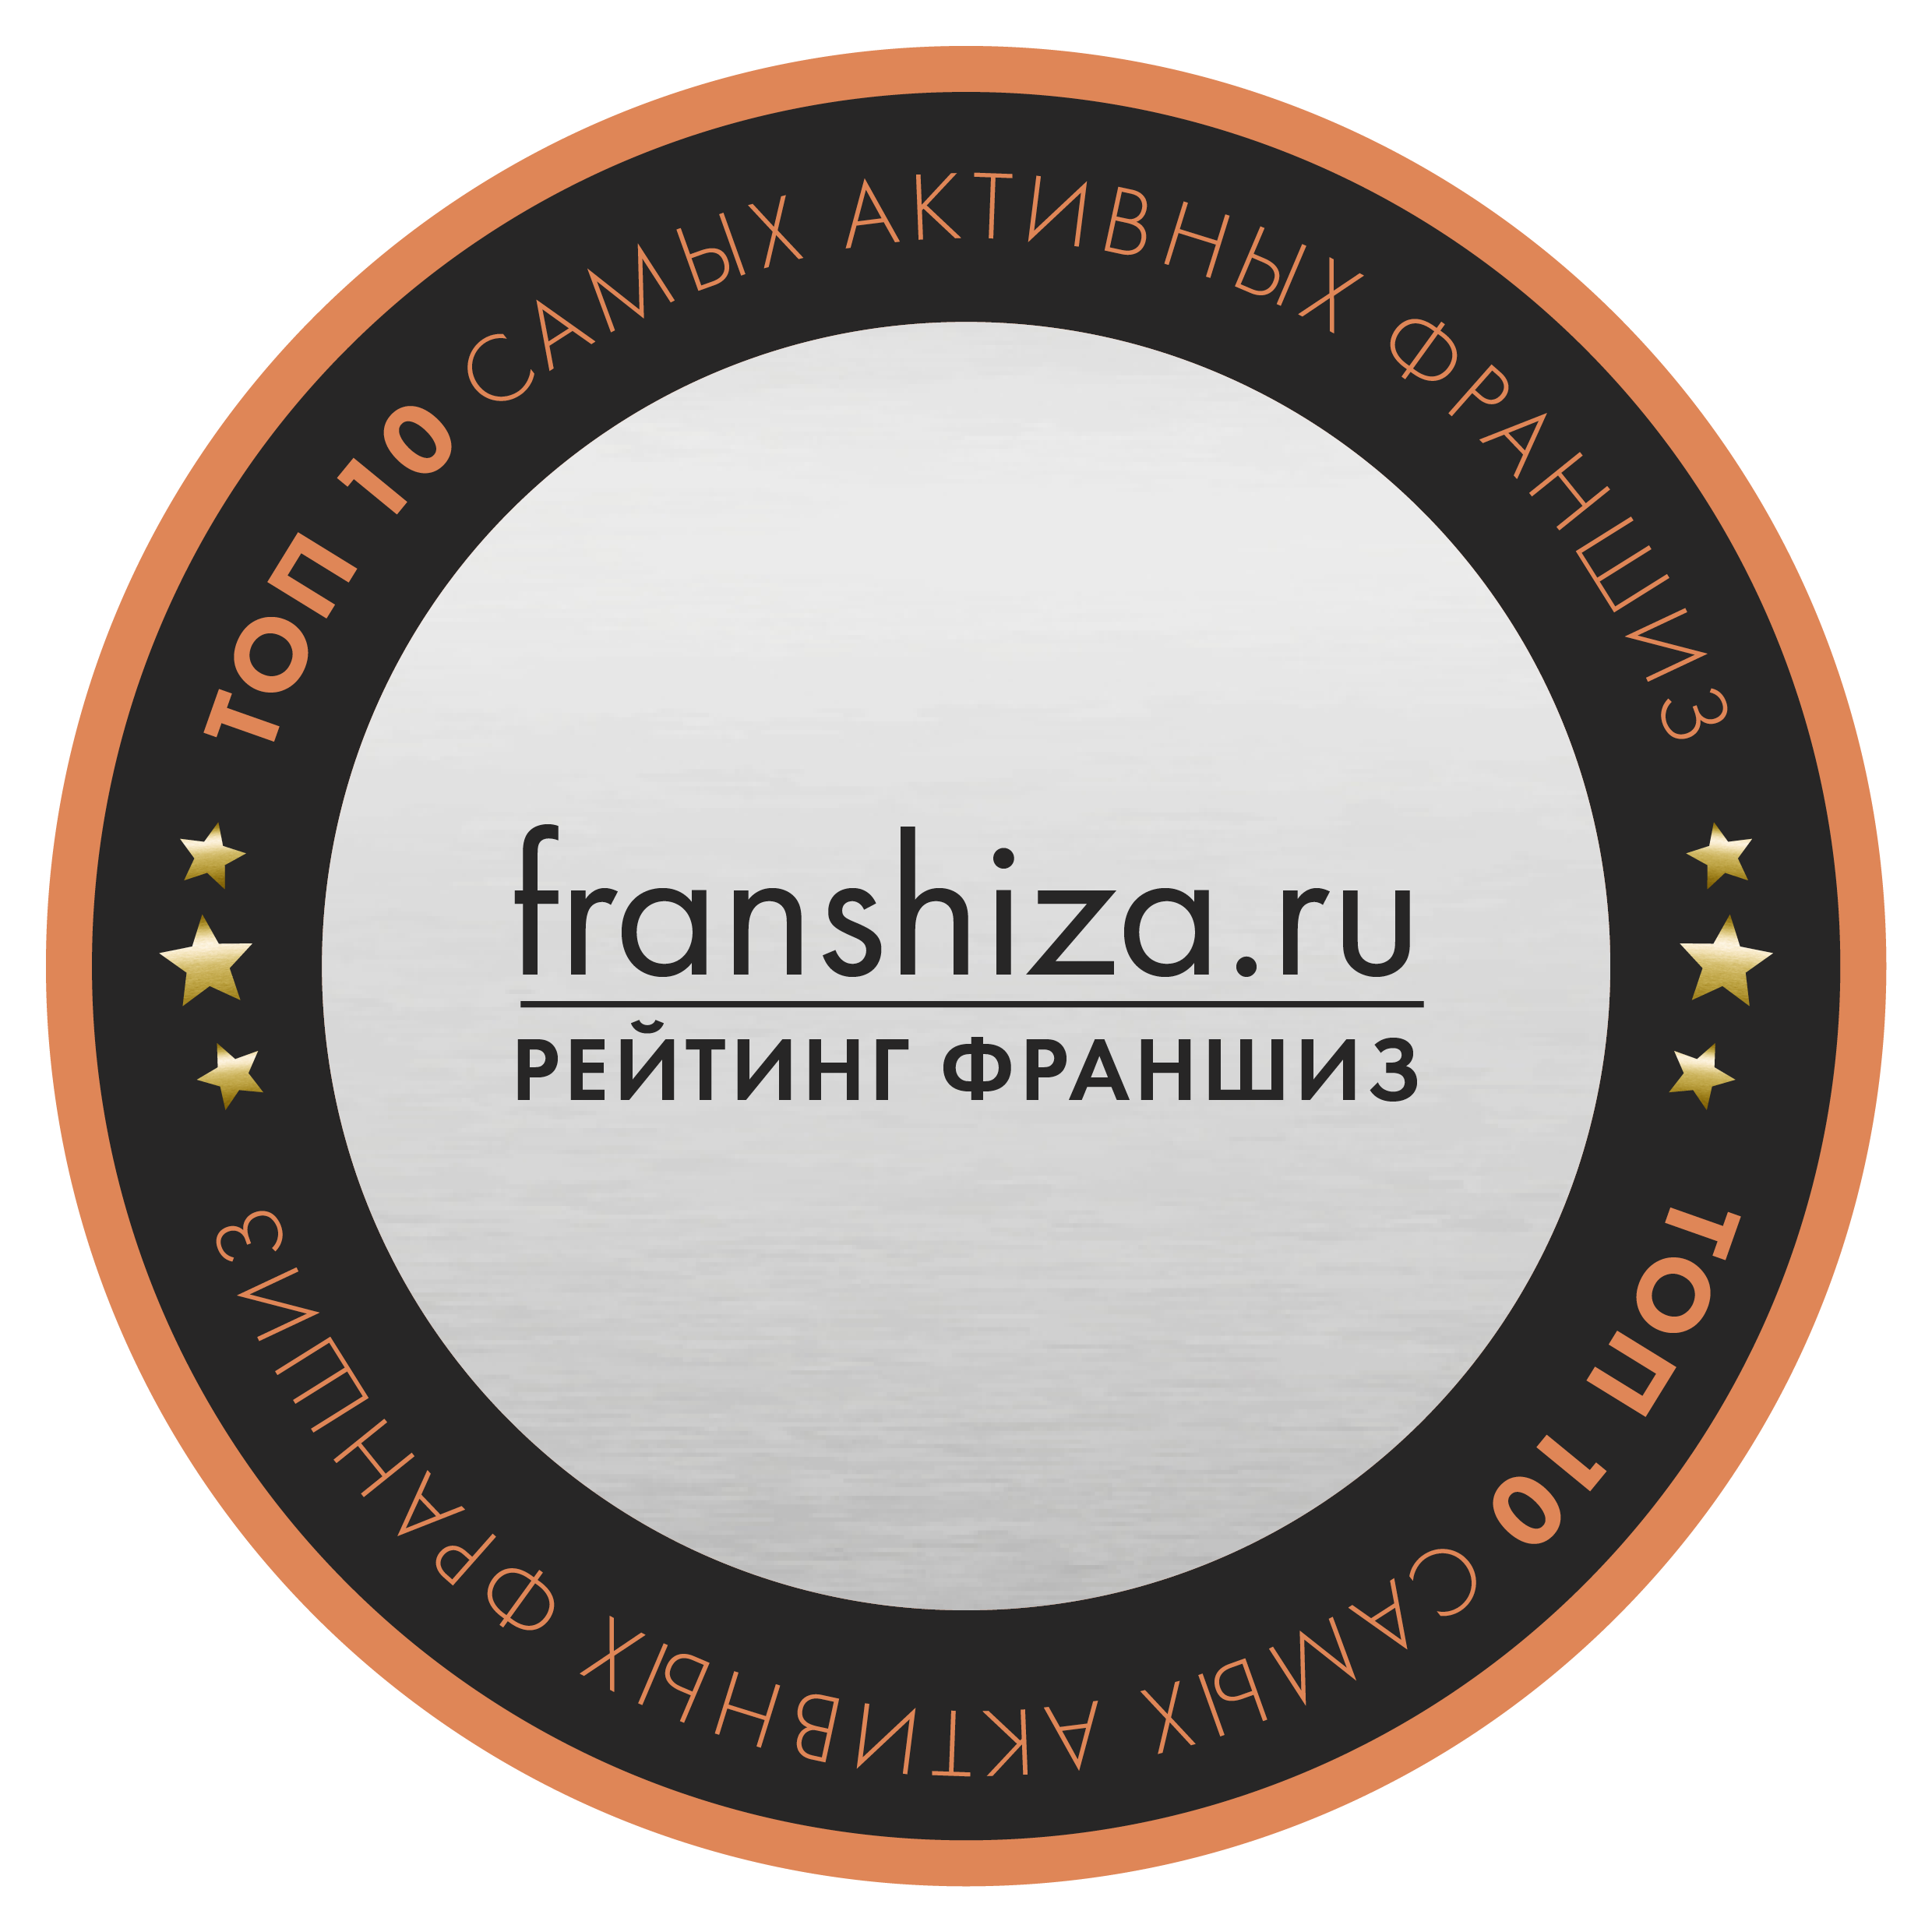 Франшиза 1С:БухОбслуживание по итогам 2020 года стала победителем рейтинга портала /franshiza.ru в номинации "Самые активные по итогам года"